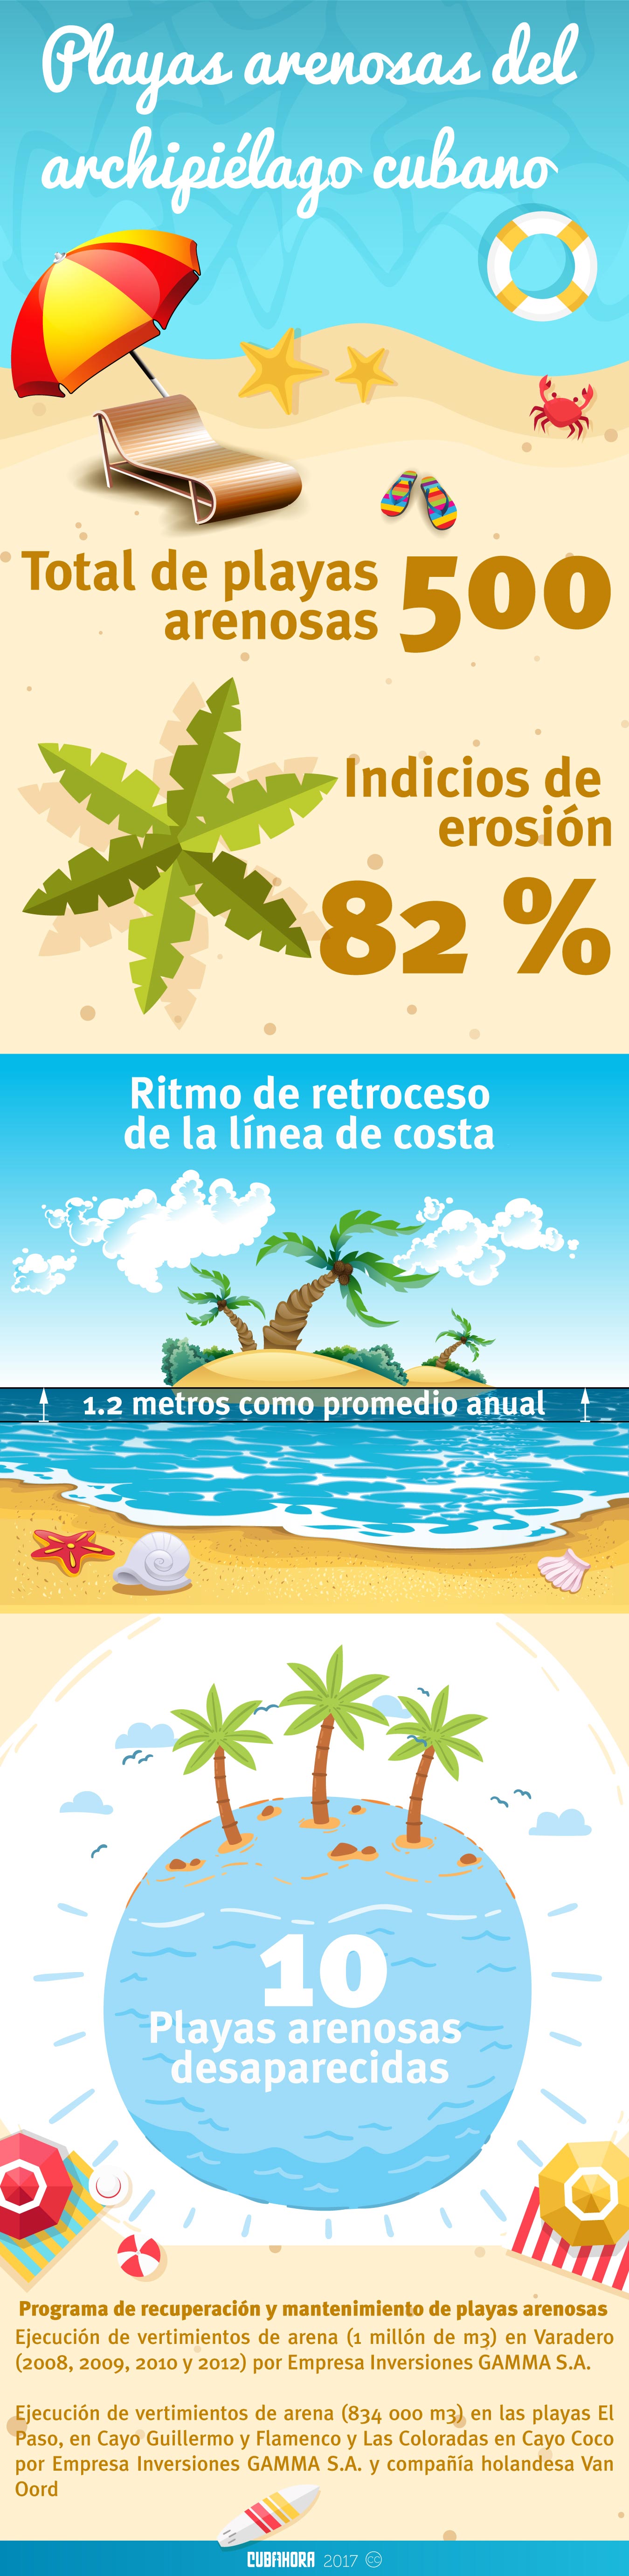 infografia-playas-arenosas-cuba